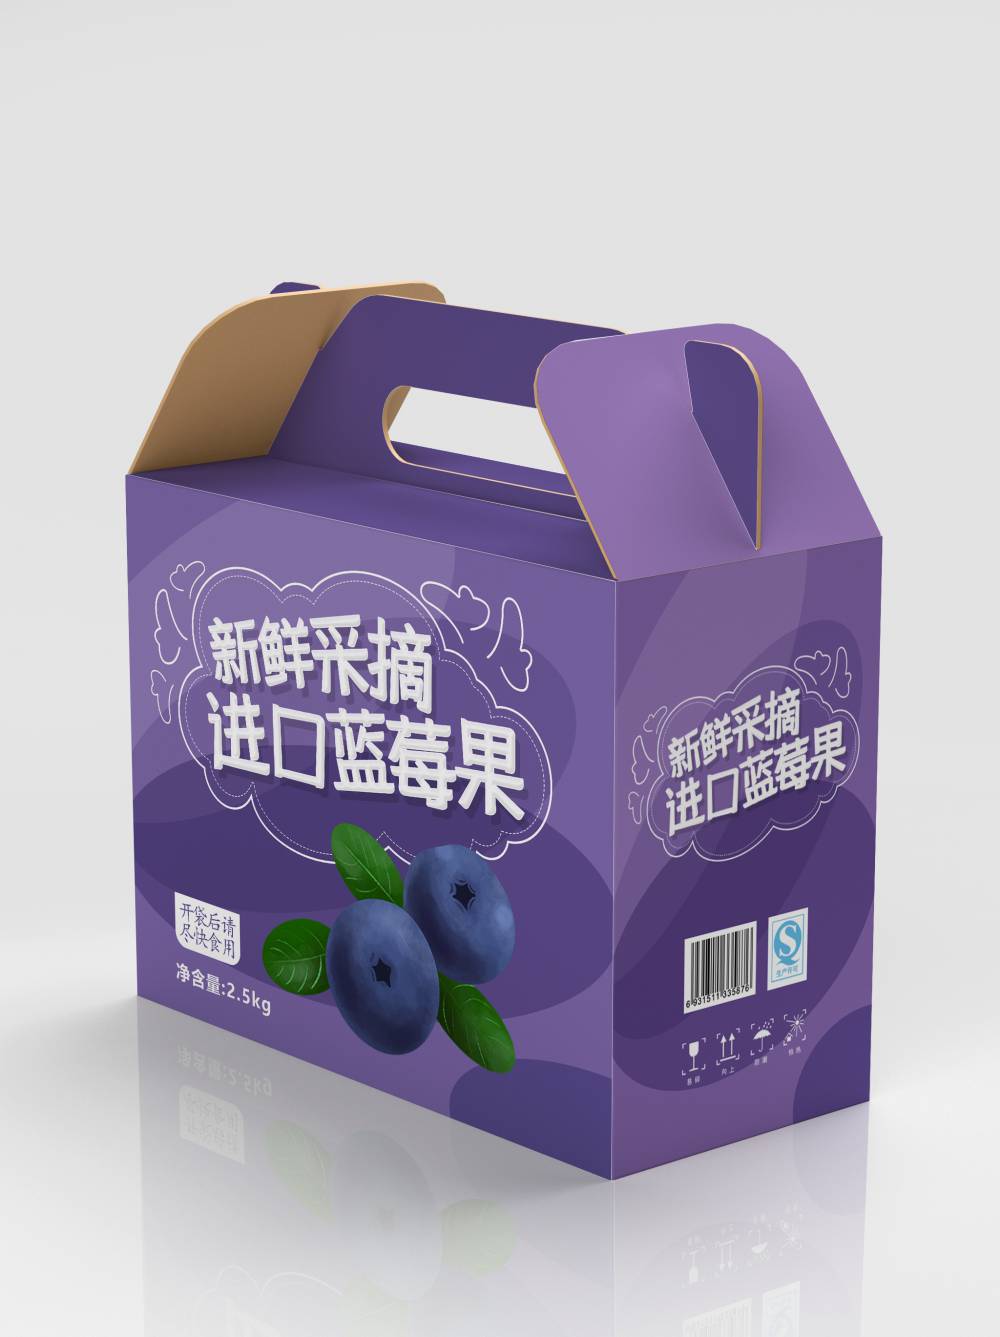 彩箱定 制印logo水果食品玩具手提瓦楞包装纸箱 彩色礼品飞机盒